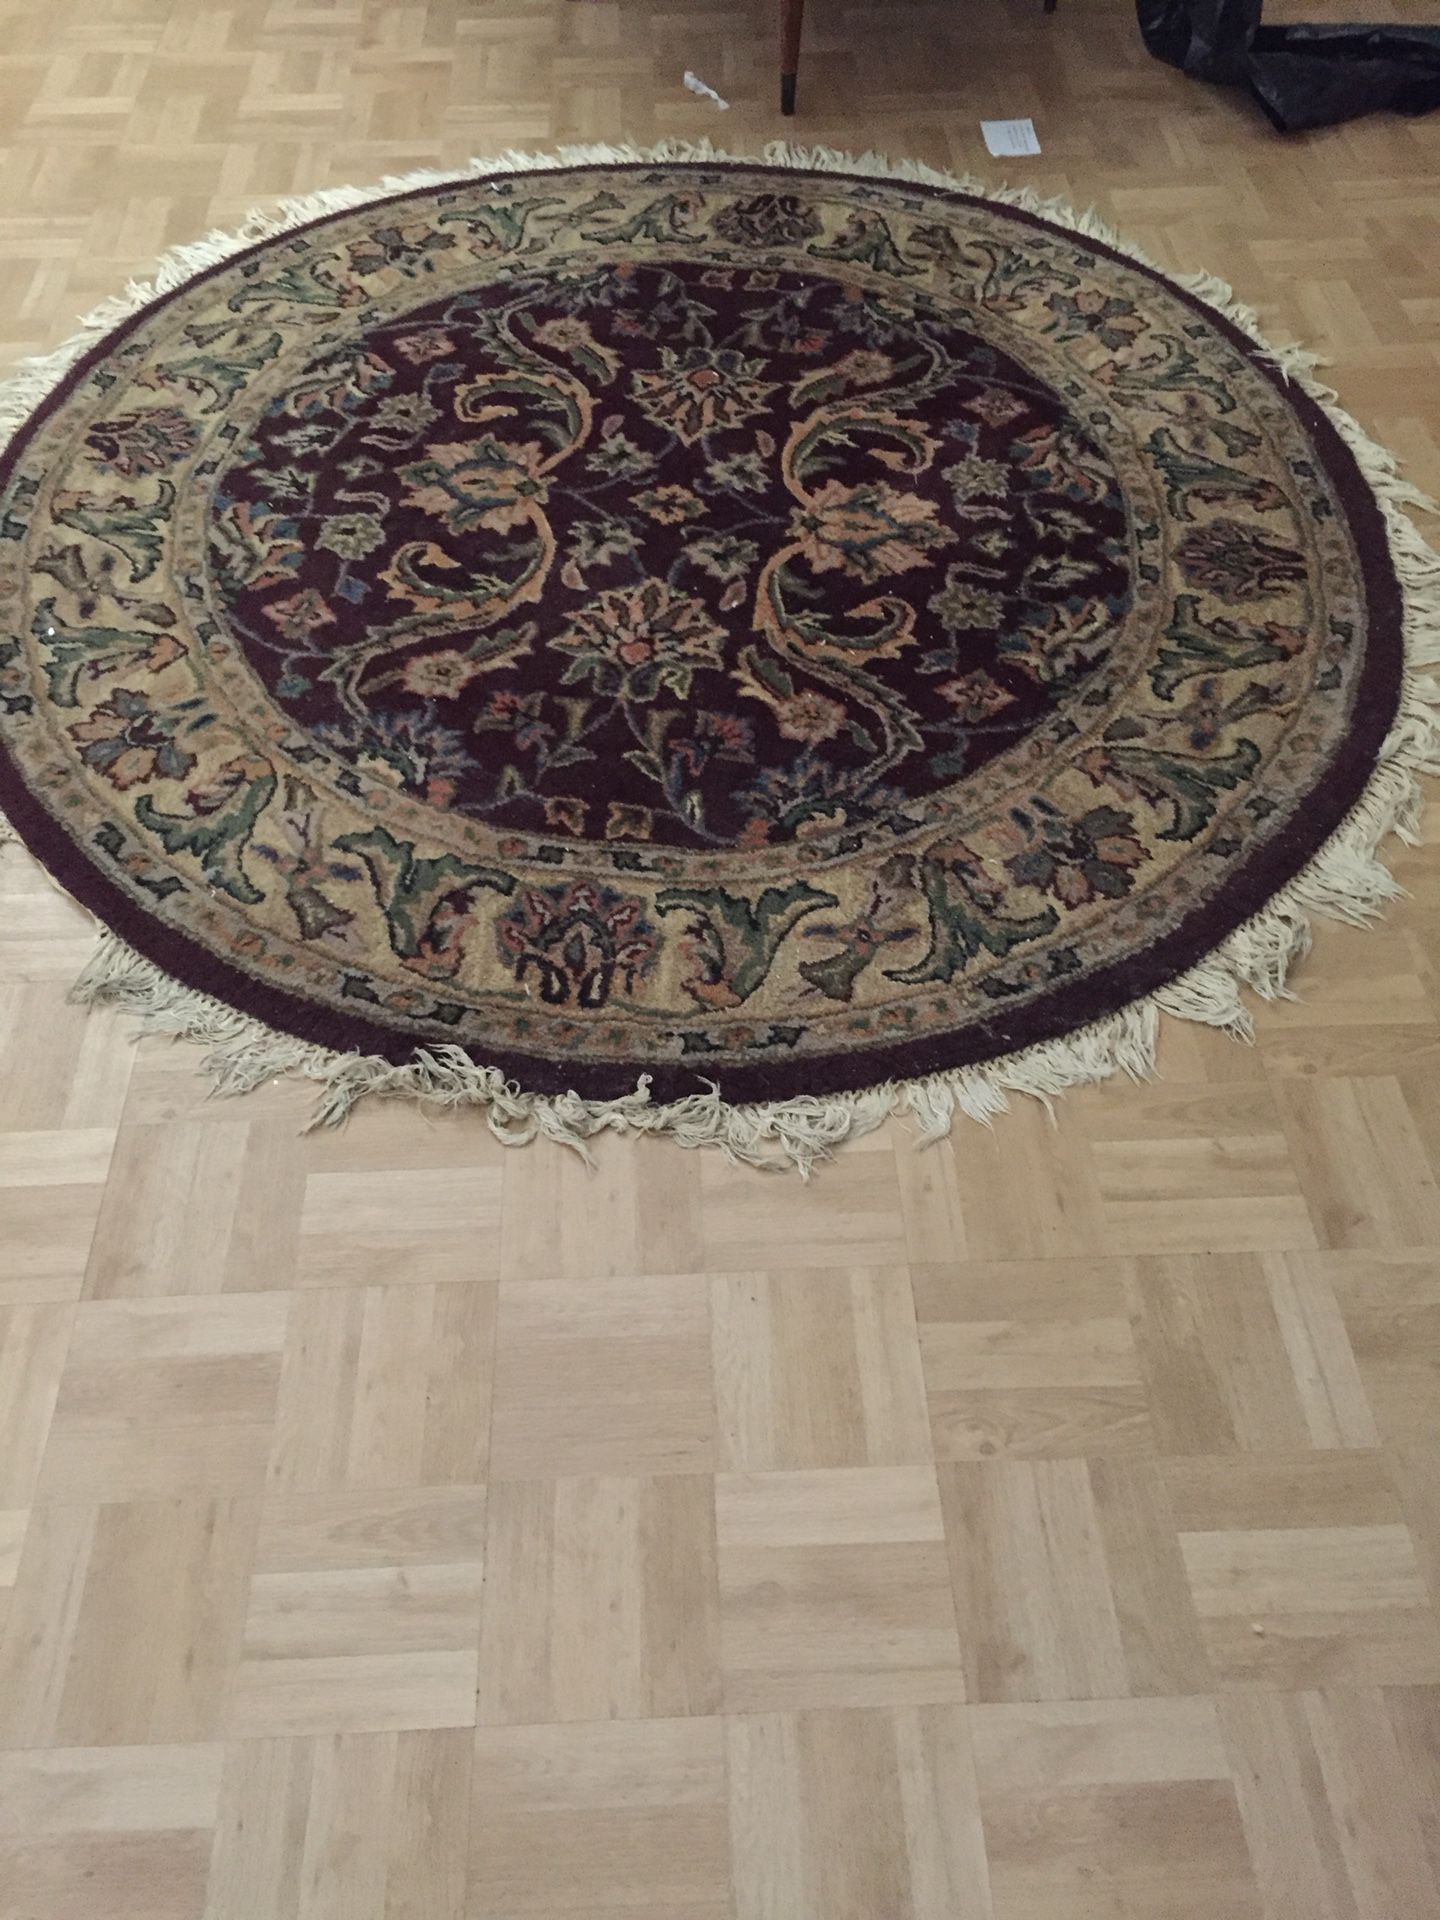 Round rug